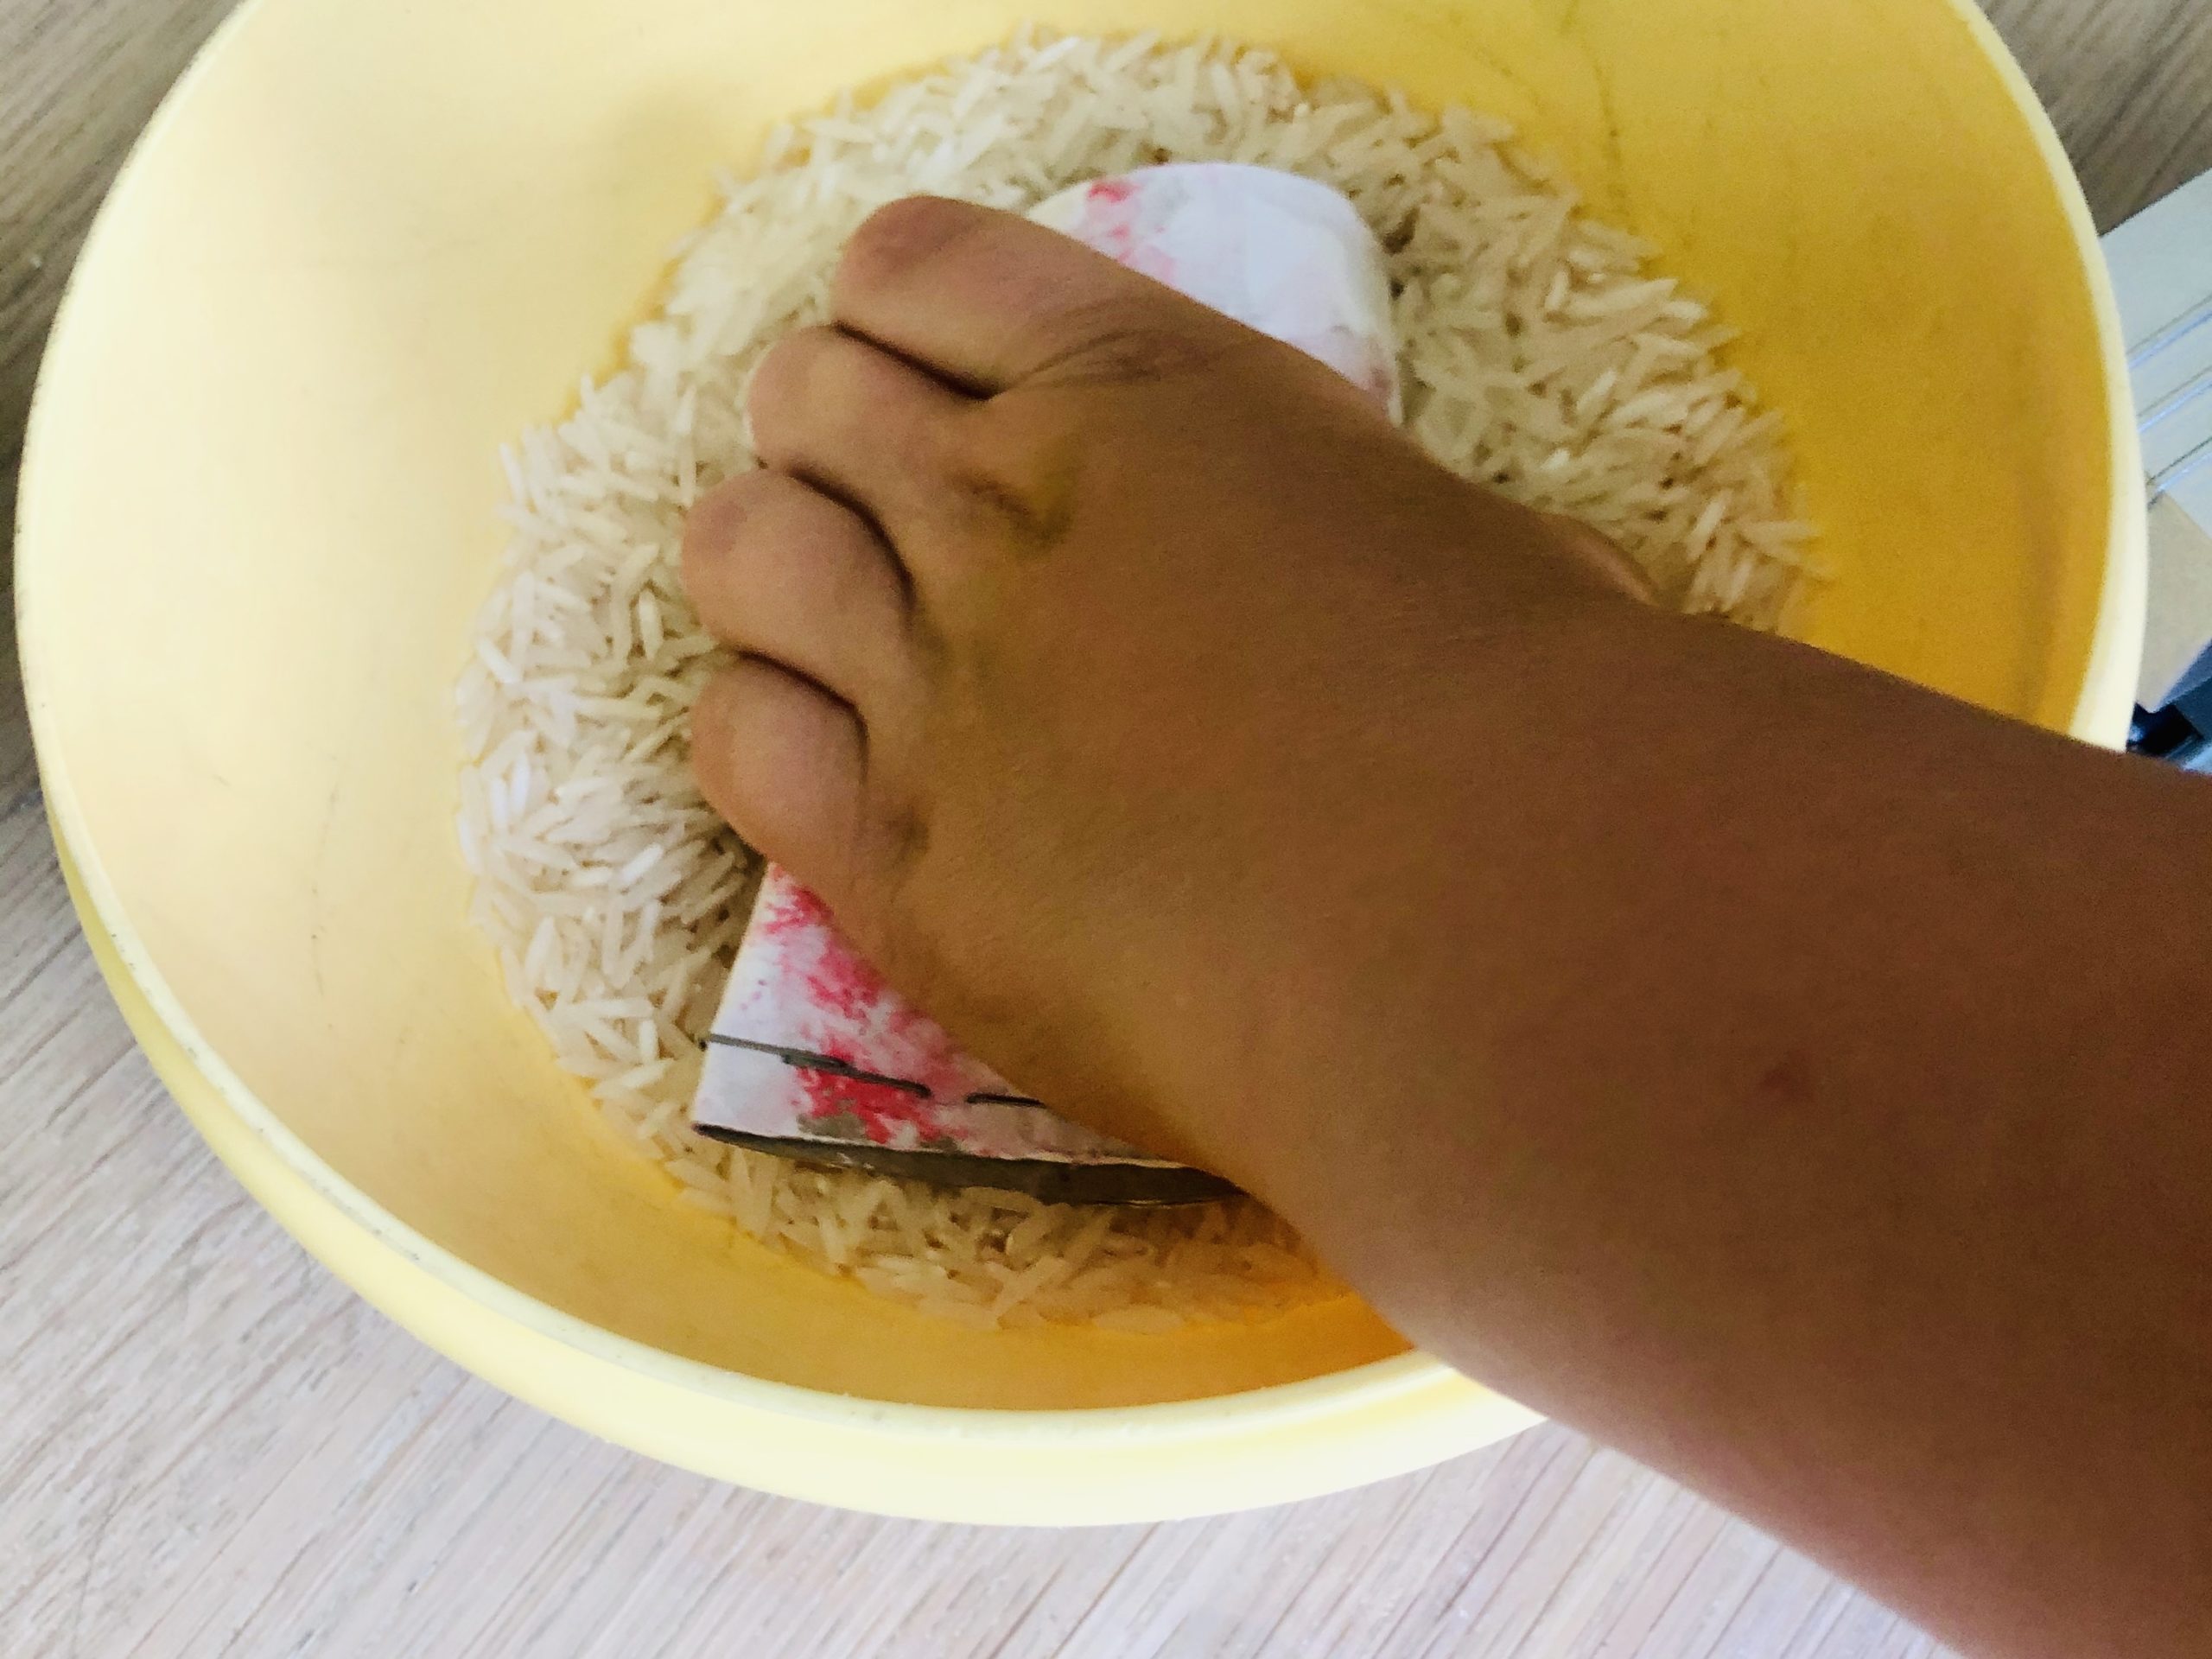 Bild zum Schritt 6 für die Kinder-Beschäftigung: 'Jetzt Reis einfüllen. Befüllt dabei maximal die Hälfte der Klorolle.'